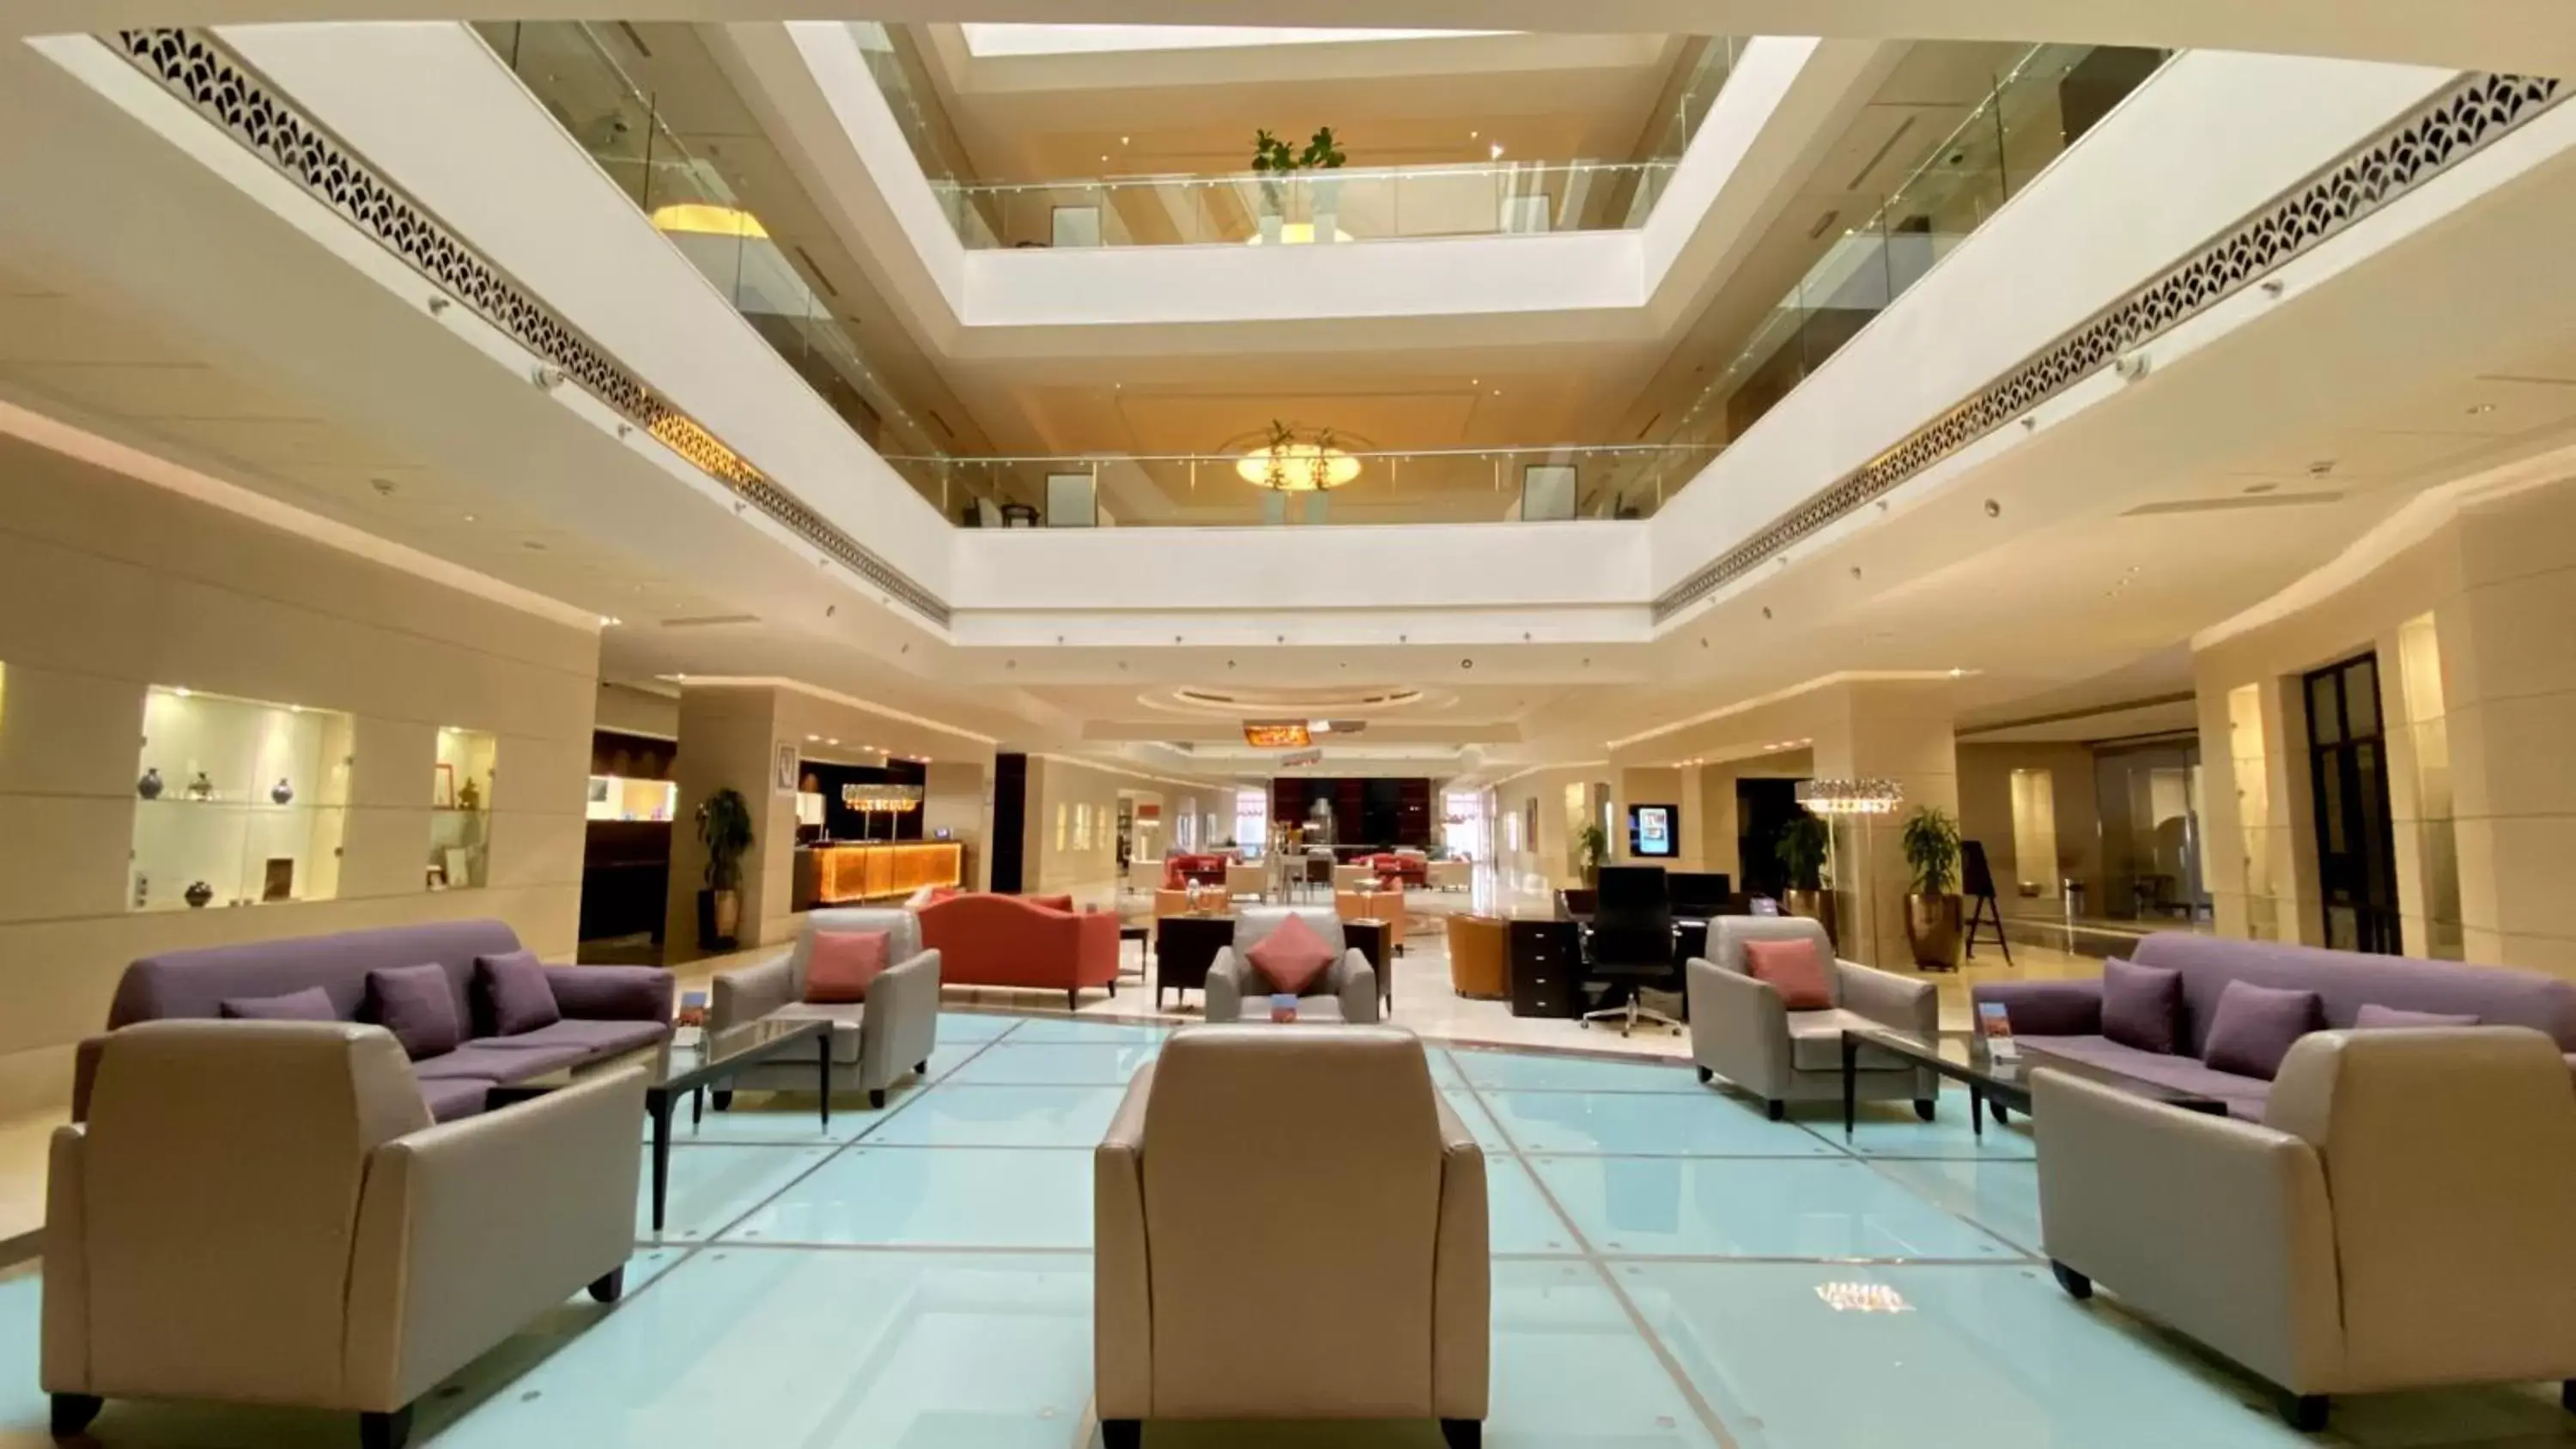 Lobby or reception, Lobby/Reception in Safir Fintas Hotel Kuwait